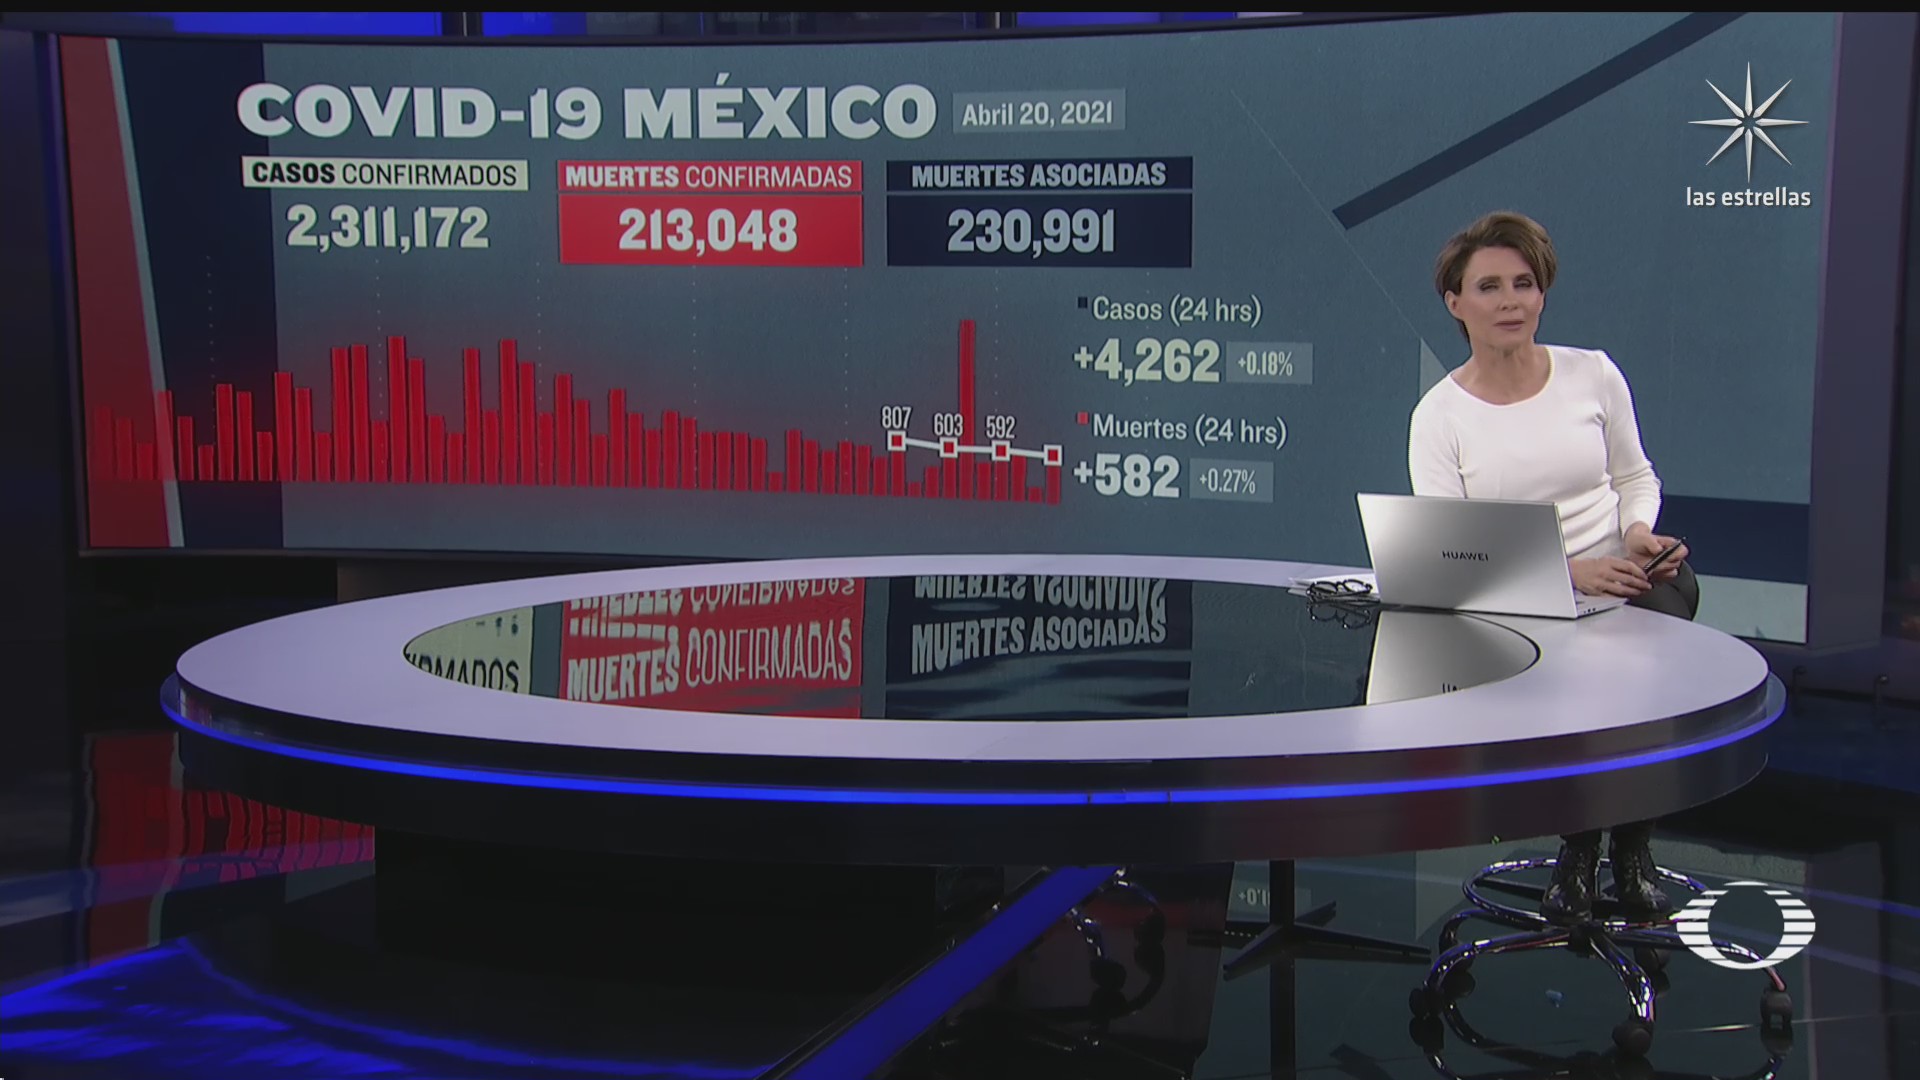 suman en mexico 213 mil 48 muertos por covid